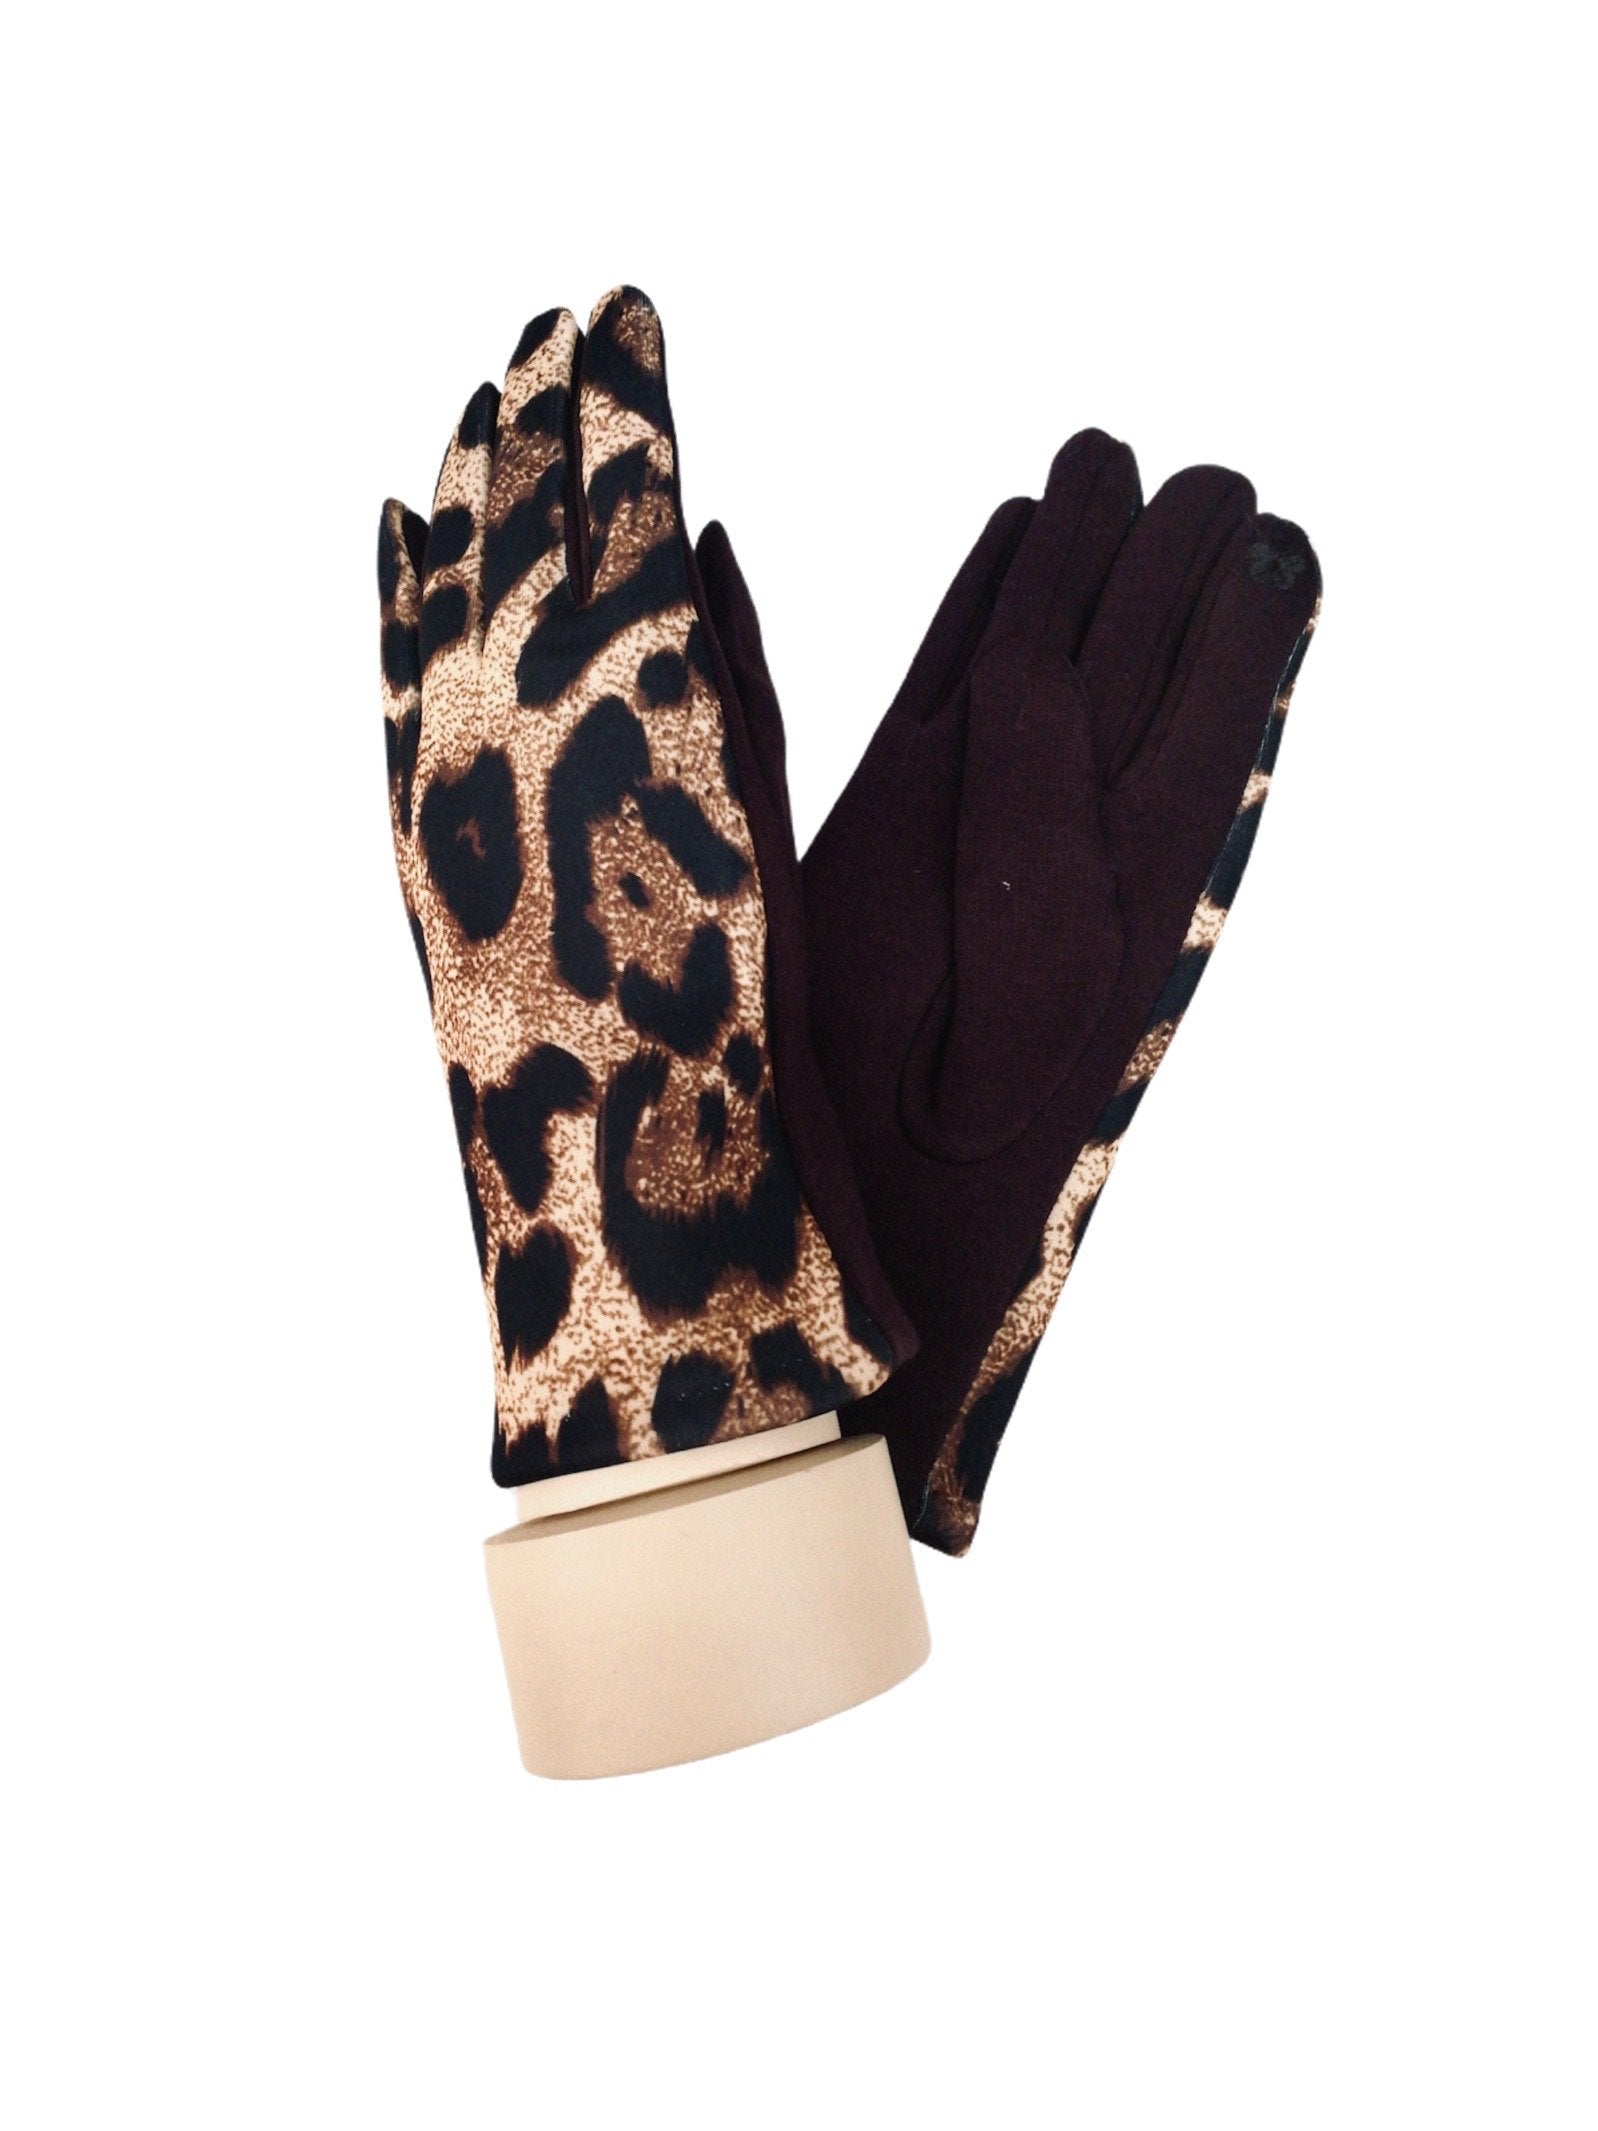 Gants tactiles motif léopard doublure (x12) 3,50€/paire | Grossiste-pro